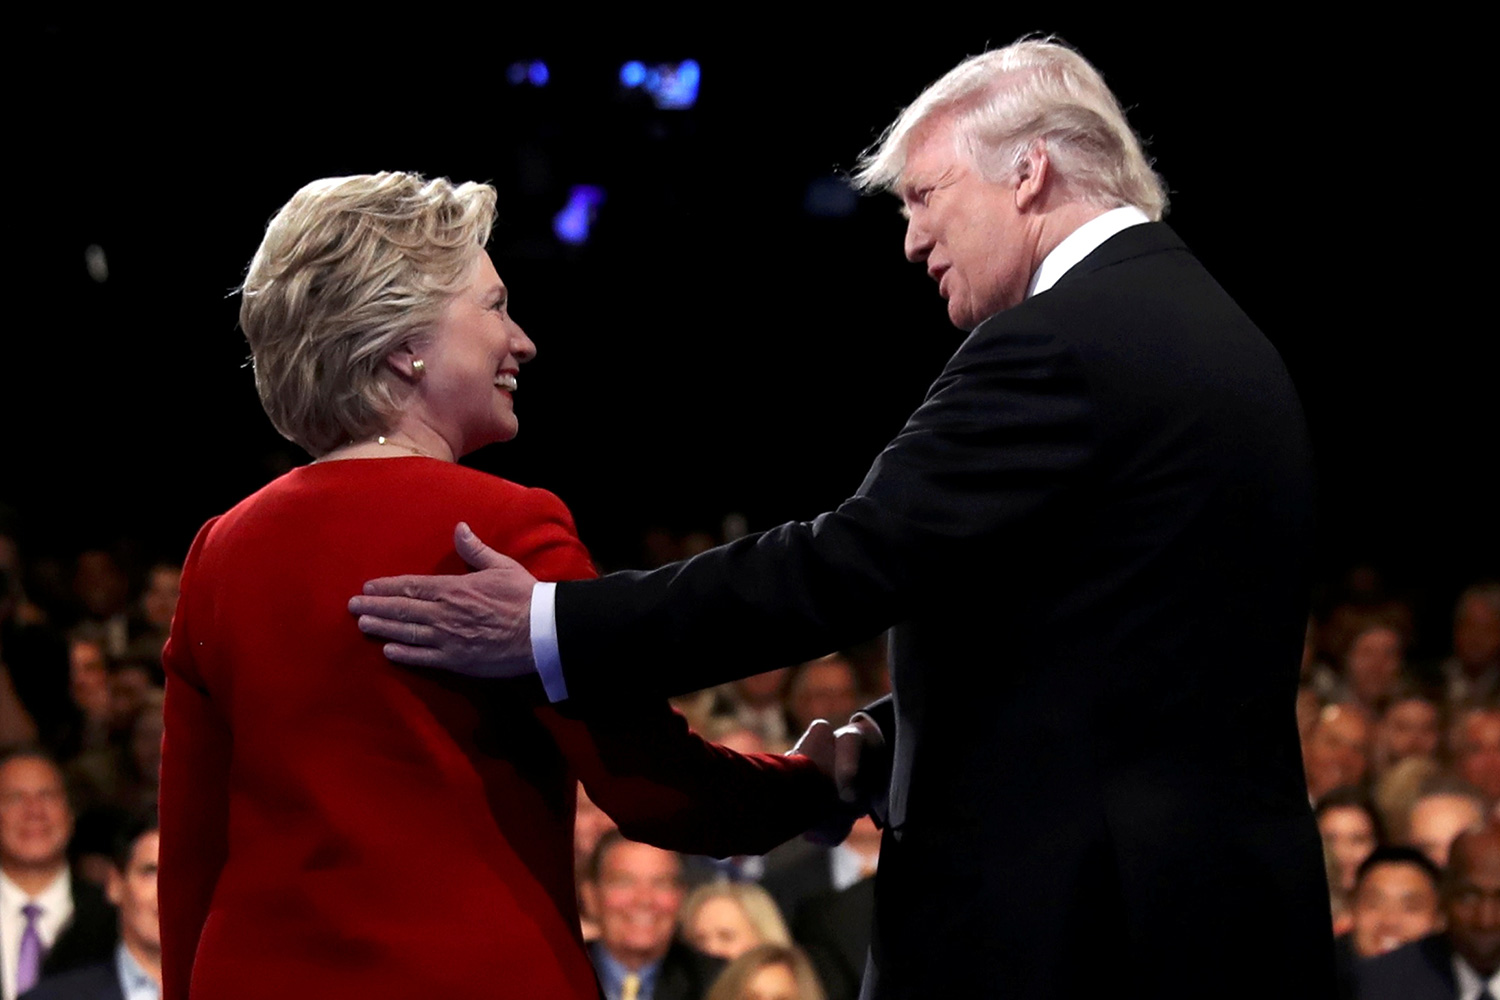 El debate entre Donald Trump y Hillary Clinton, carne de cañón en Twitter